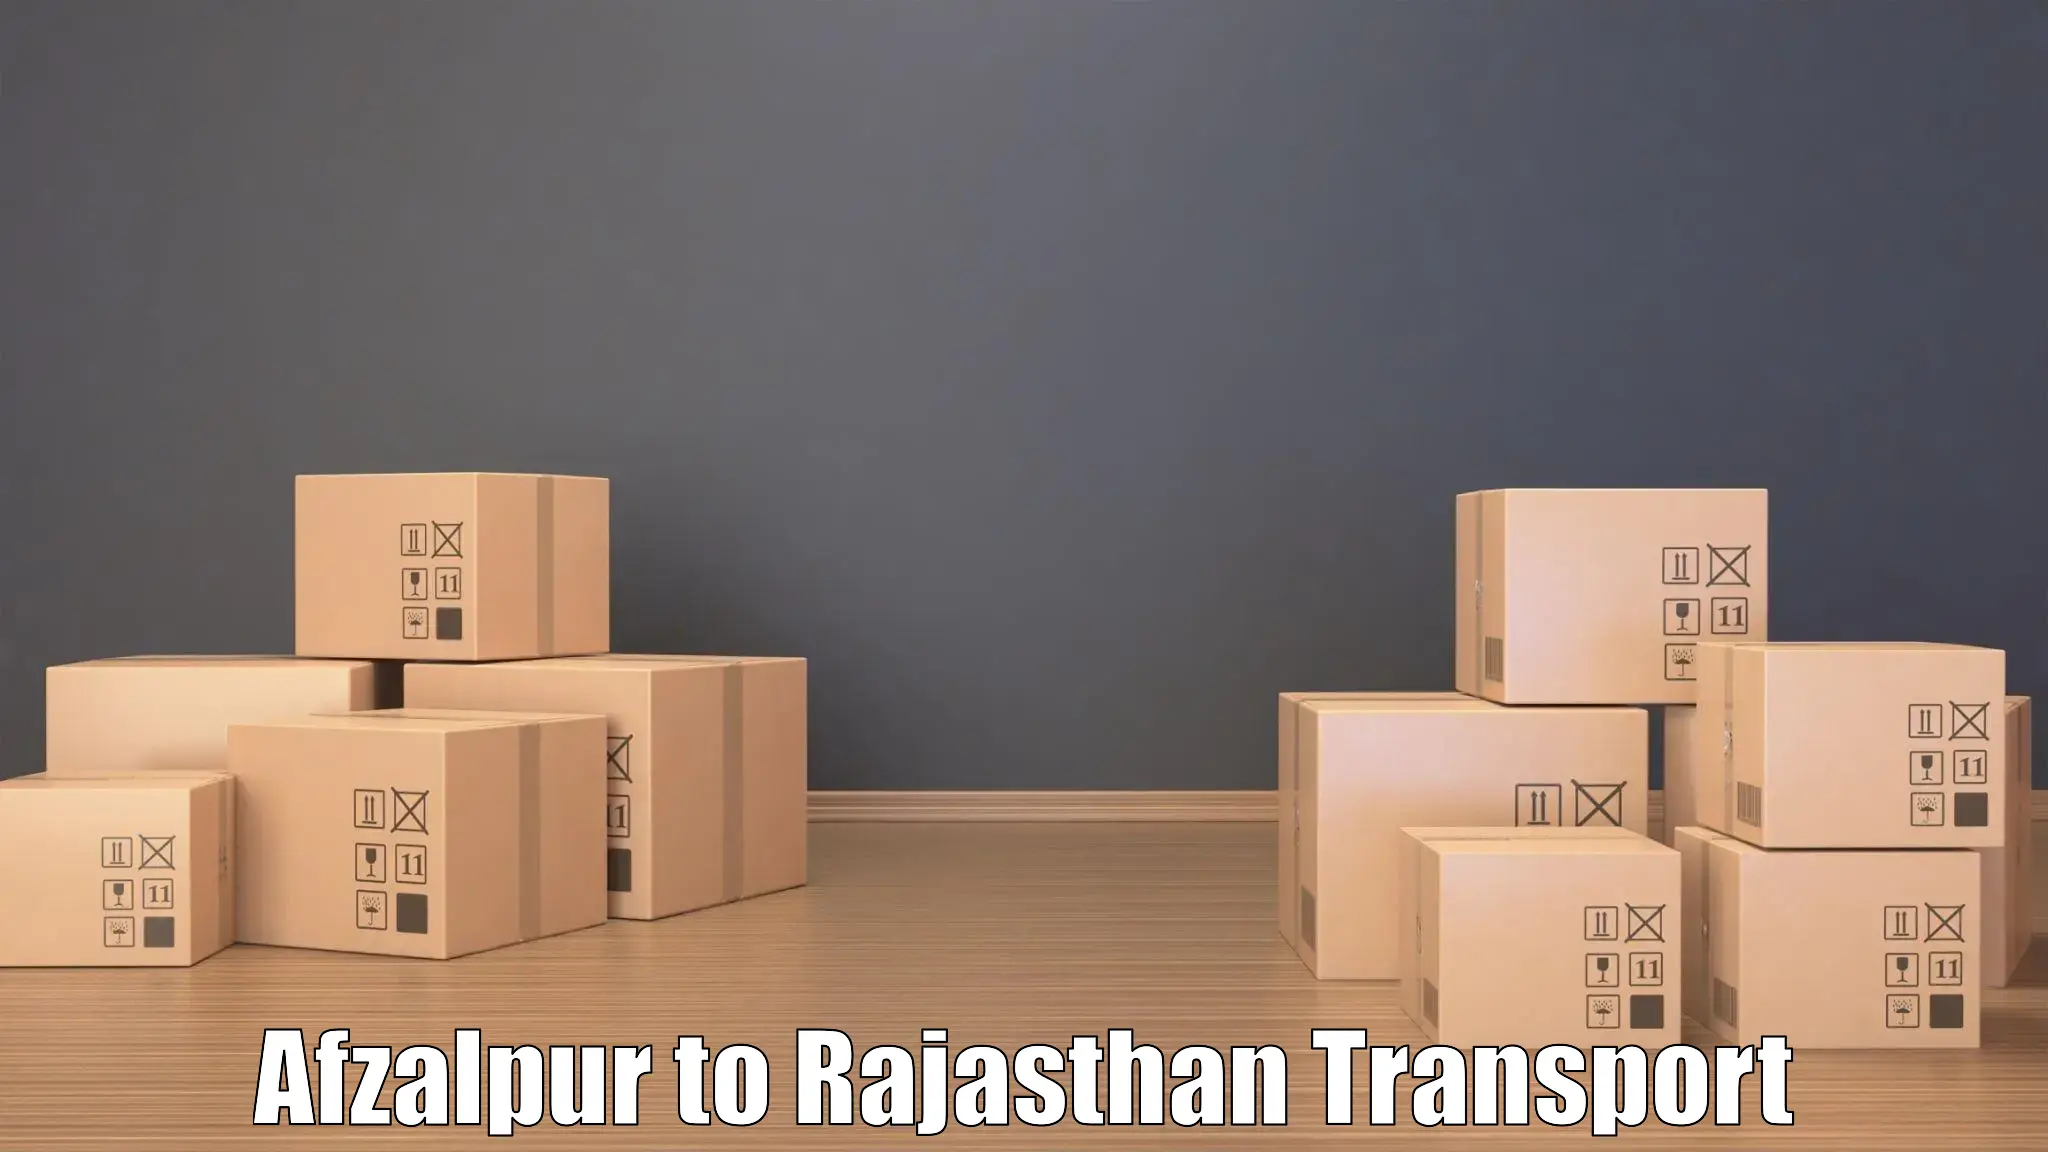 Cargo train transport services Afzalpur to Chittorgarh